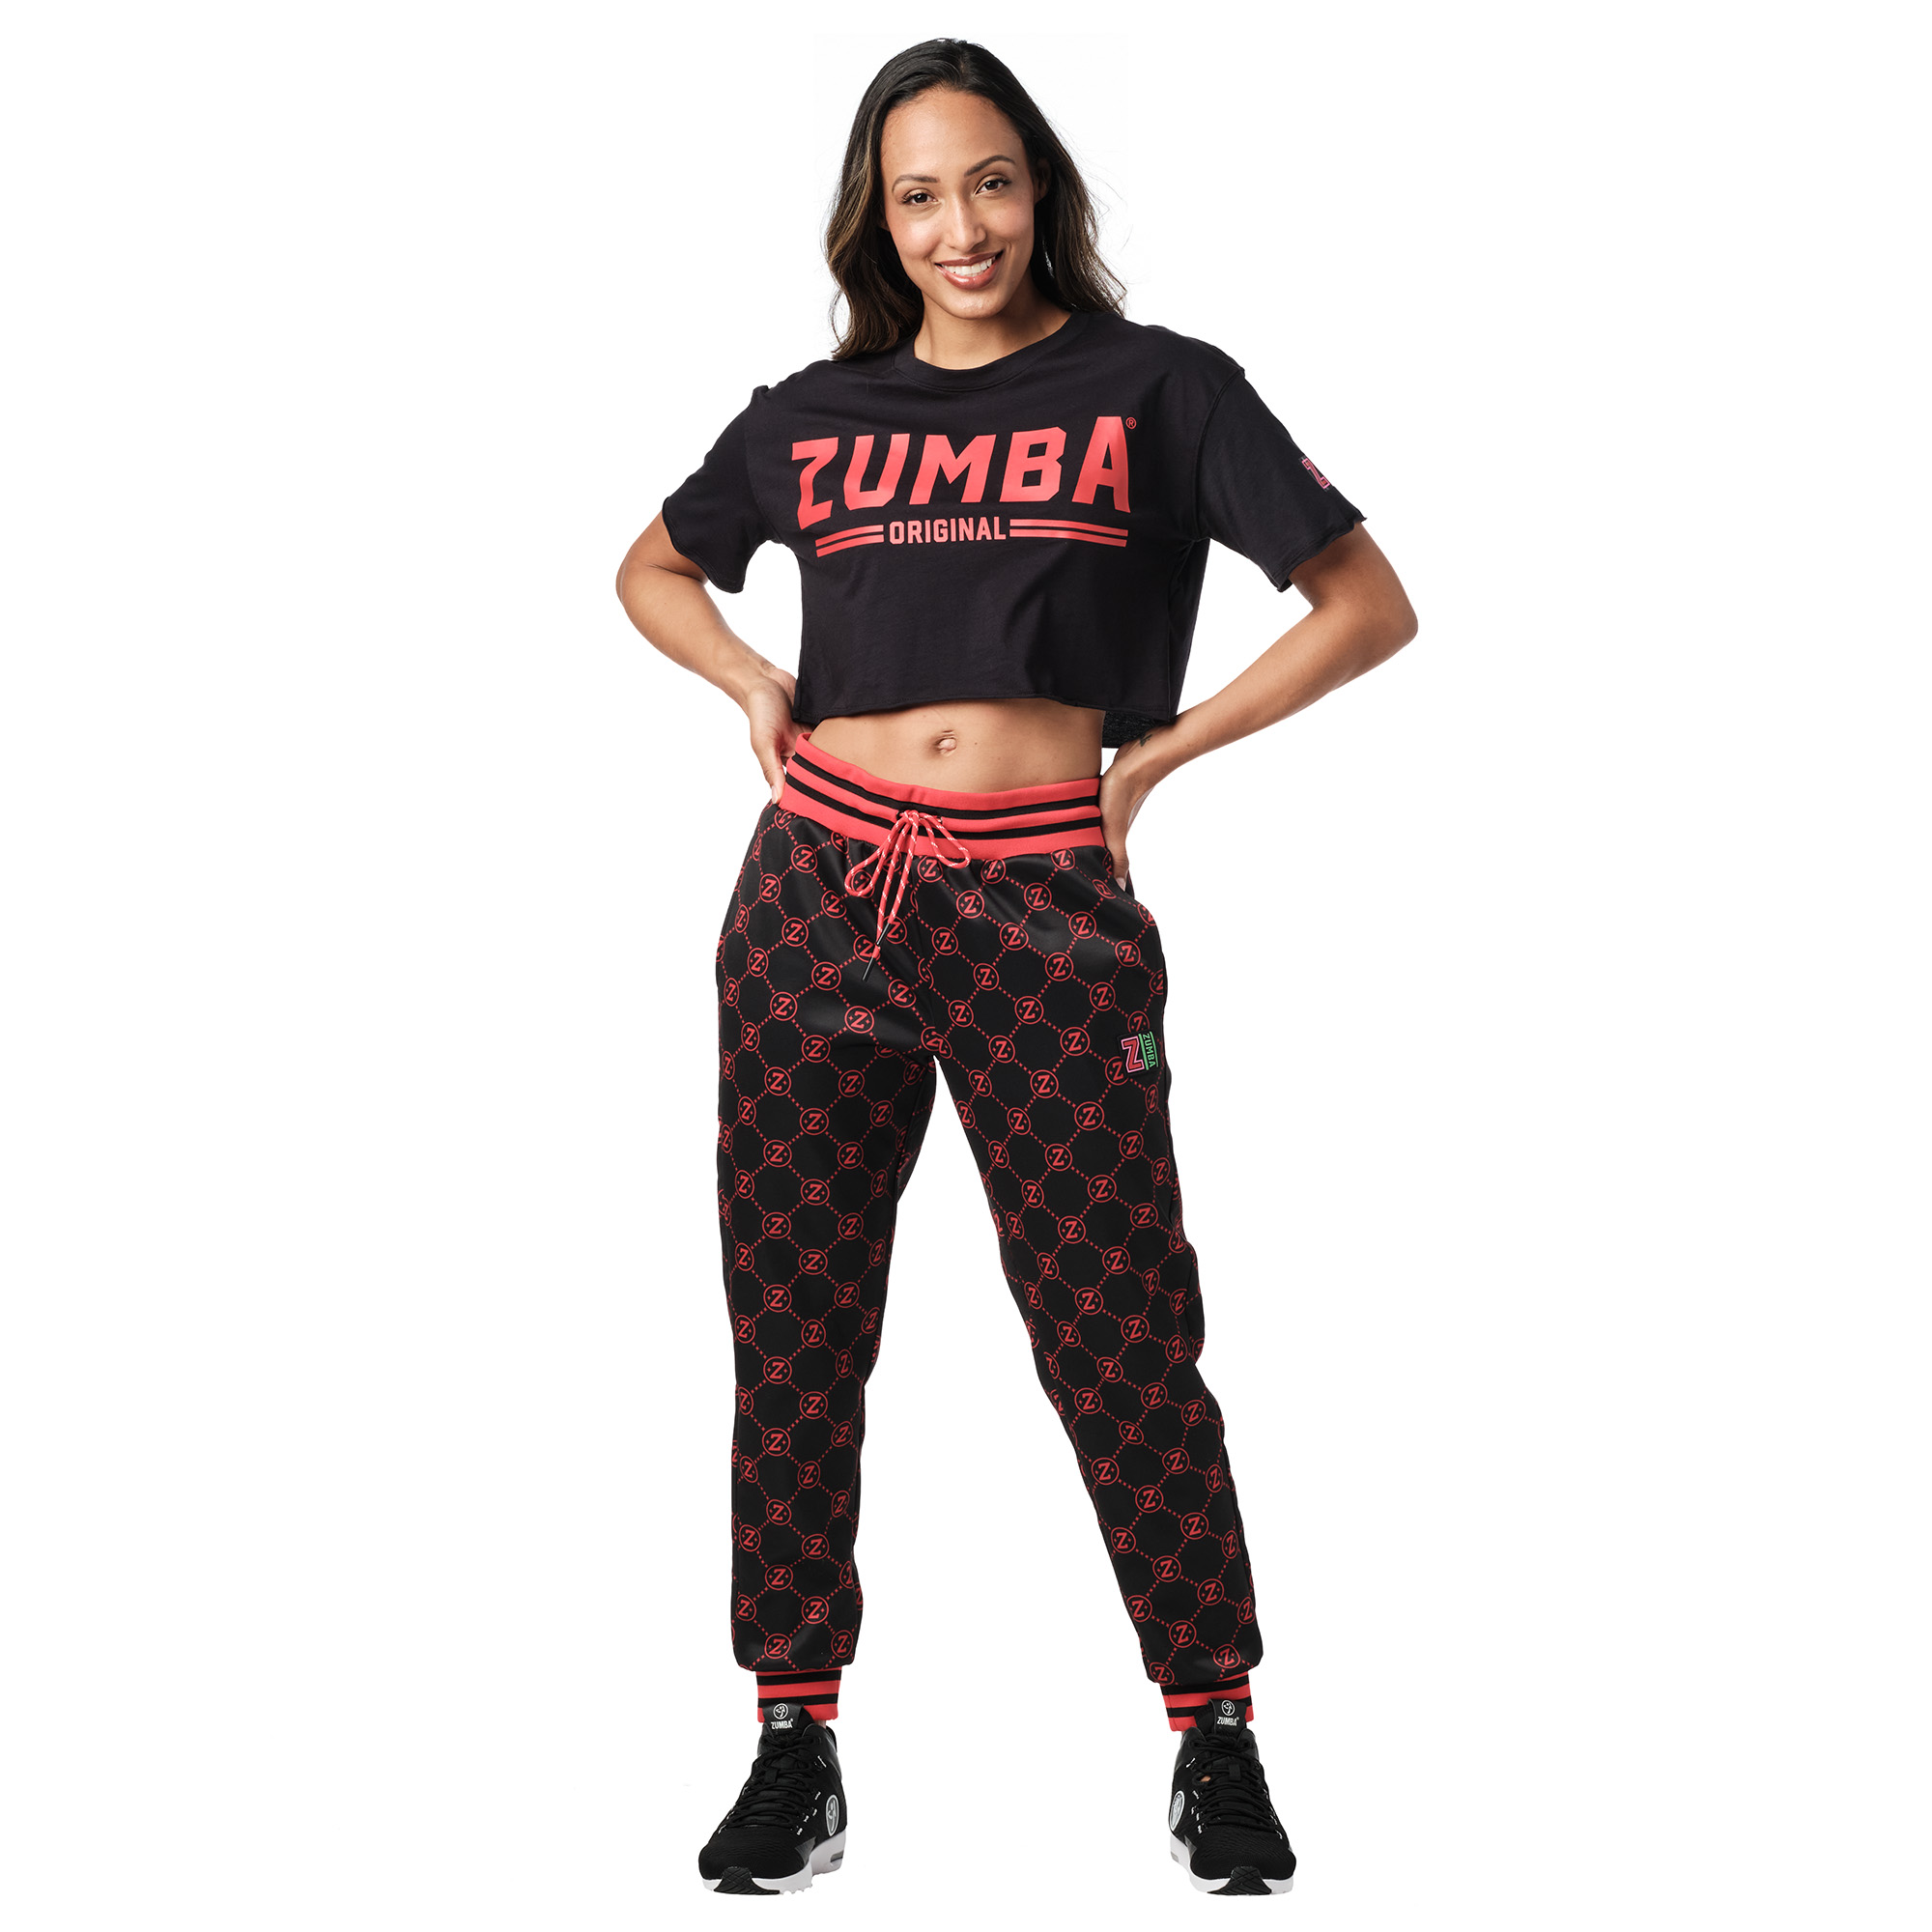 Zumba Original Top – Latinfit Middle East